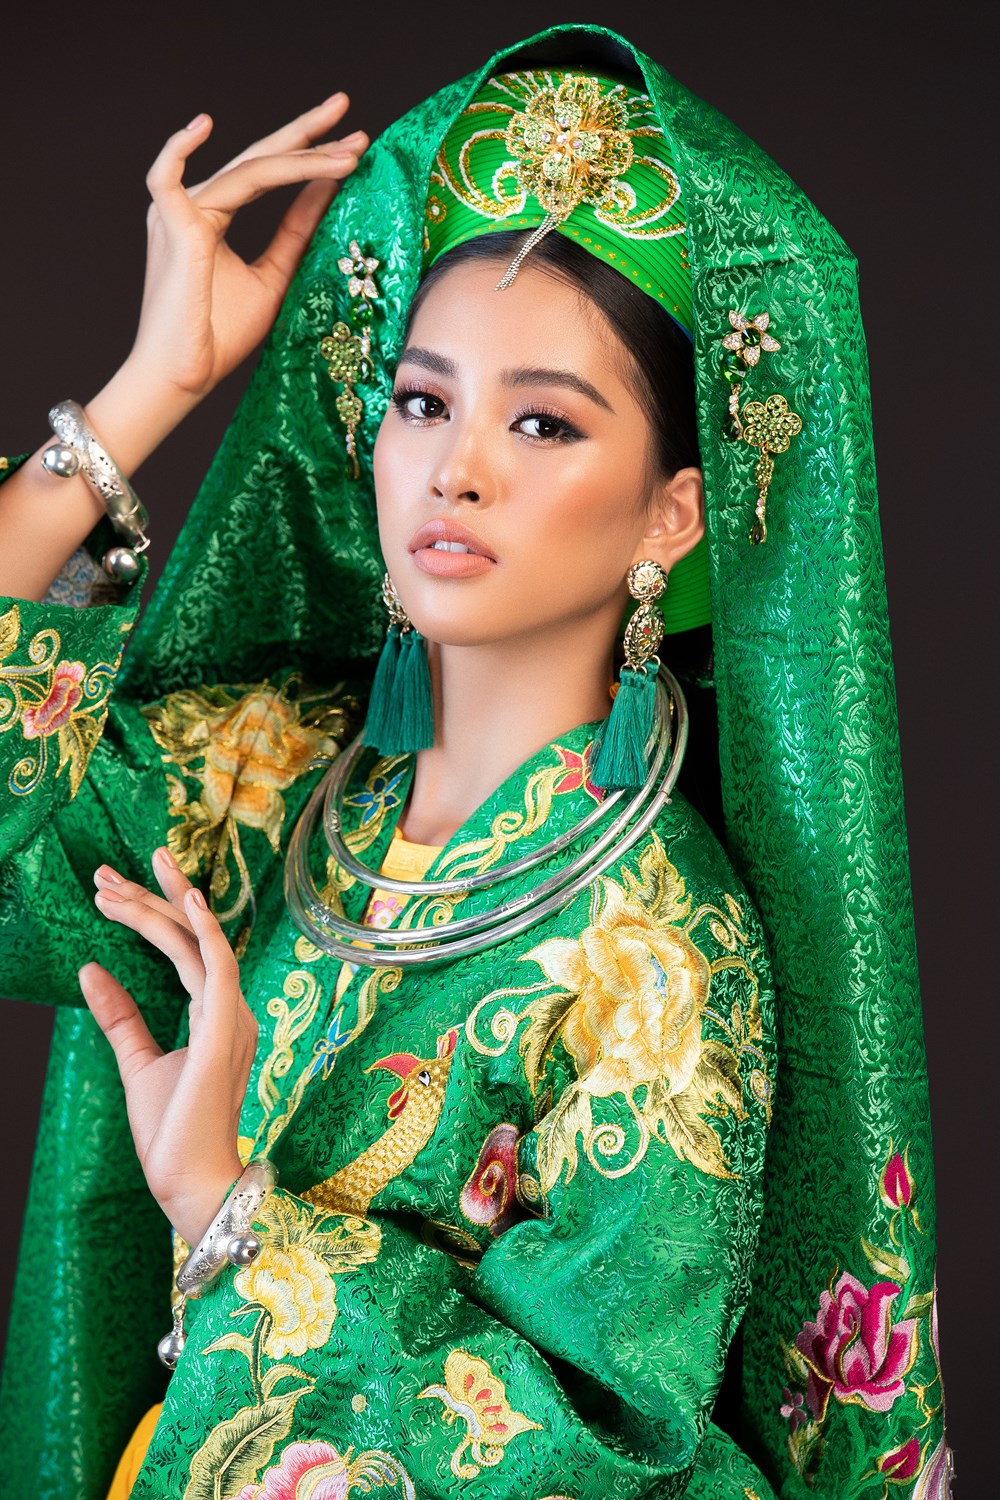 Hoa hậu Tiểu Vy trình diễn nghệ thuật chầu văn tại MissWorld - ảnh 2